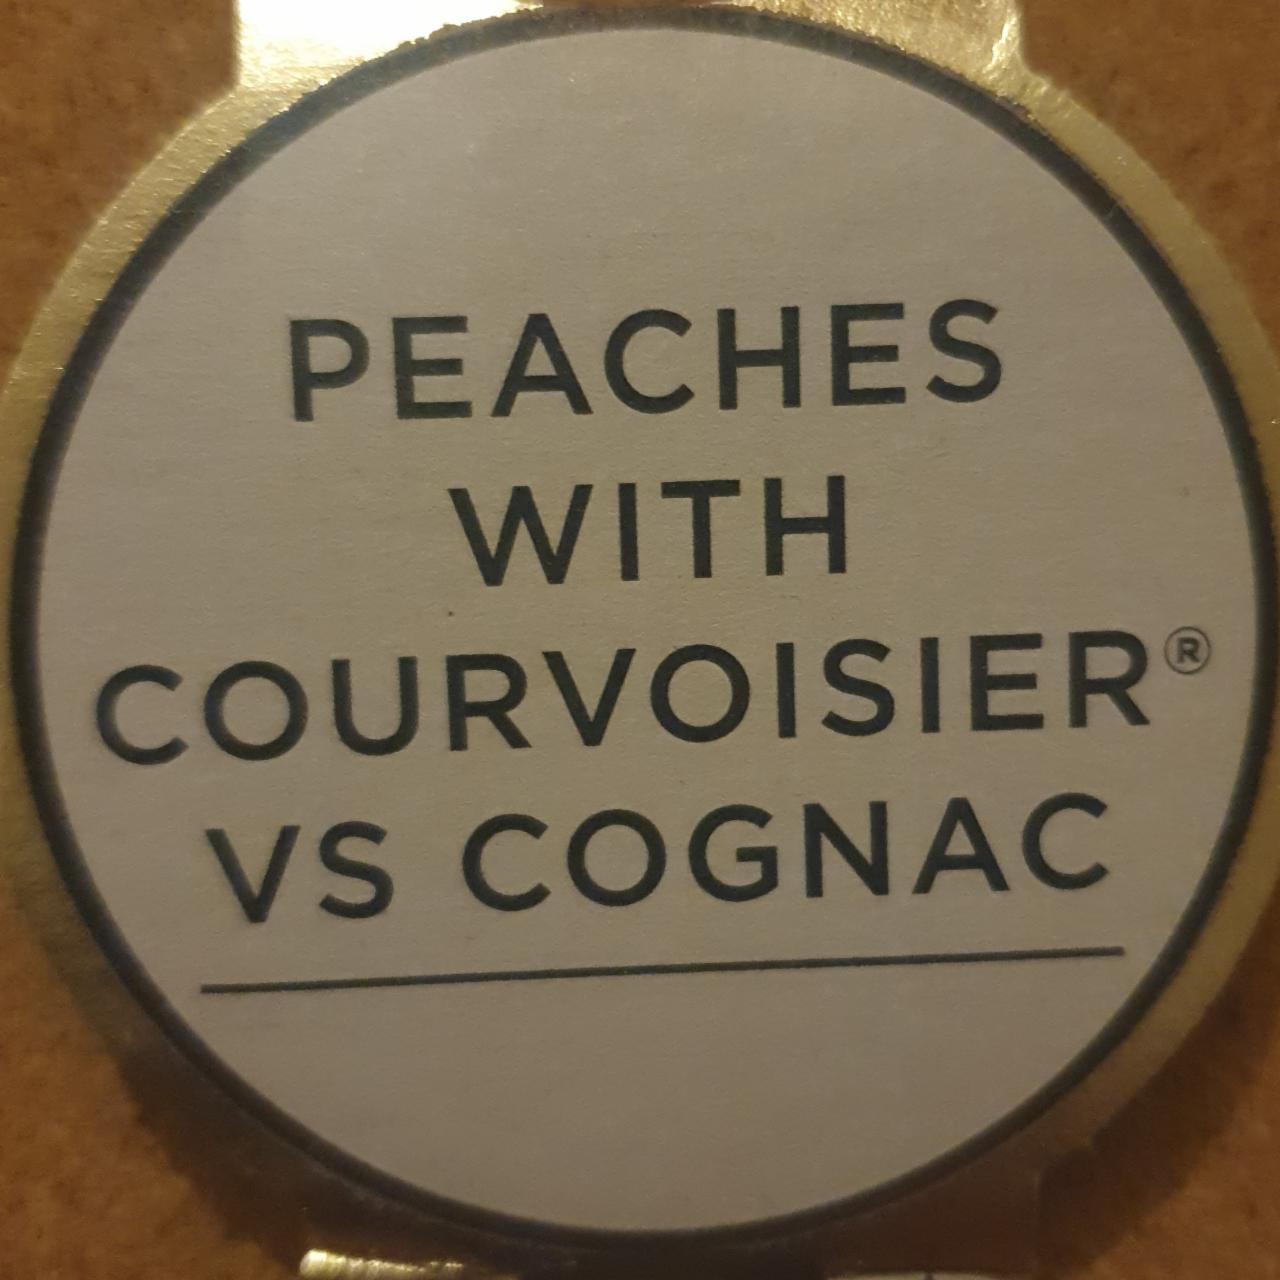 Fotografie - Peaches with courvoisier vs cognac Sainsbury's